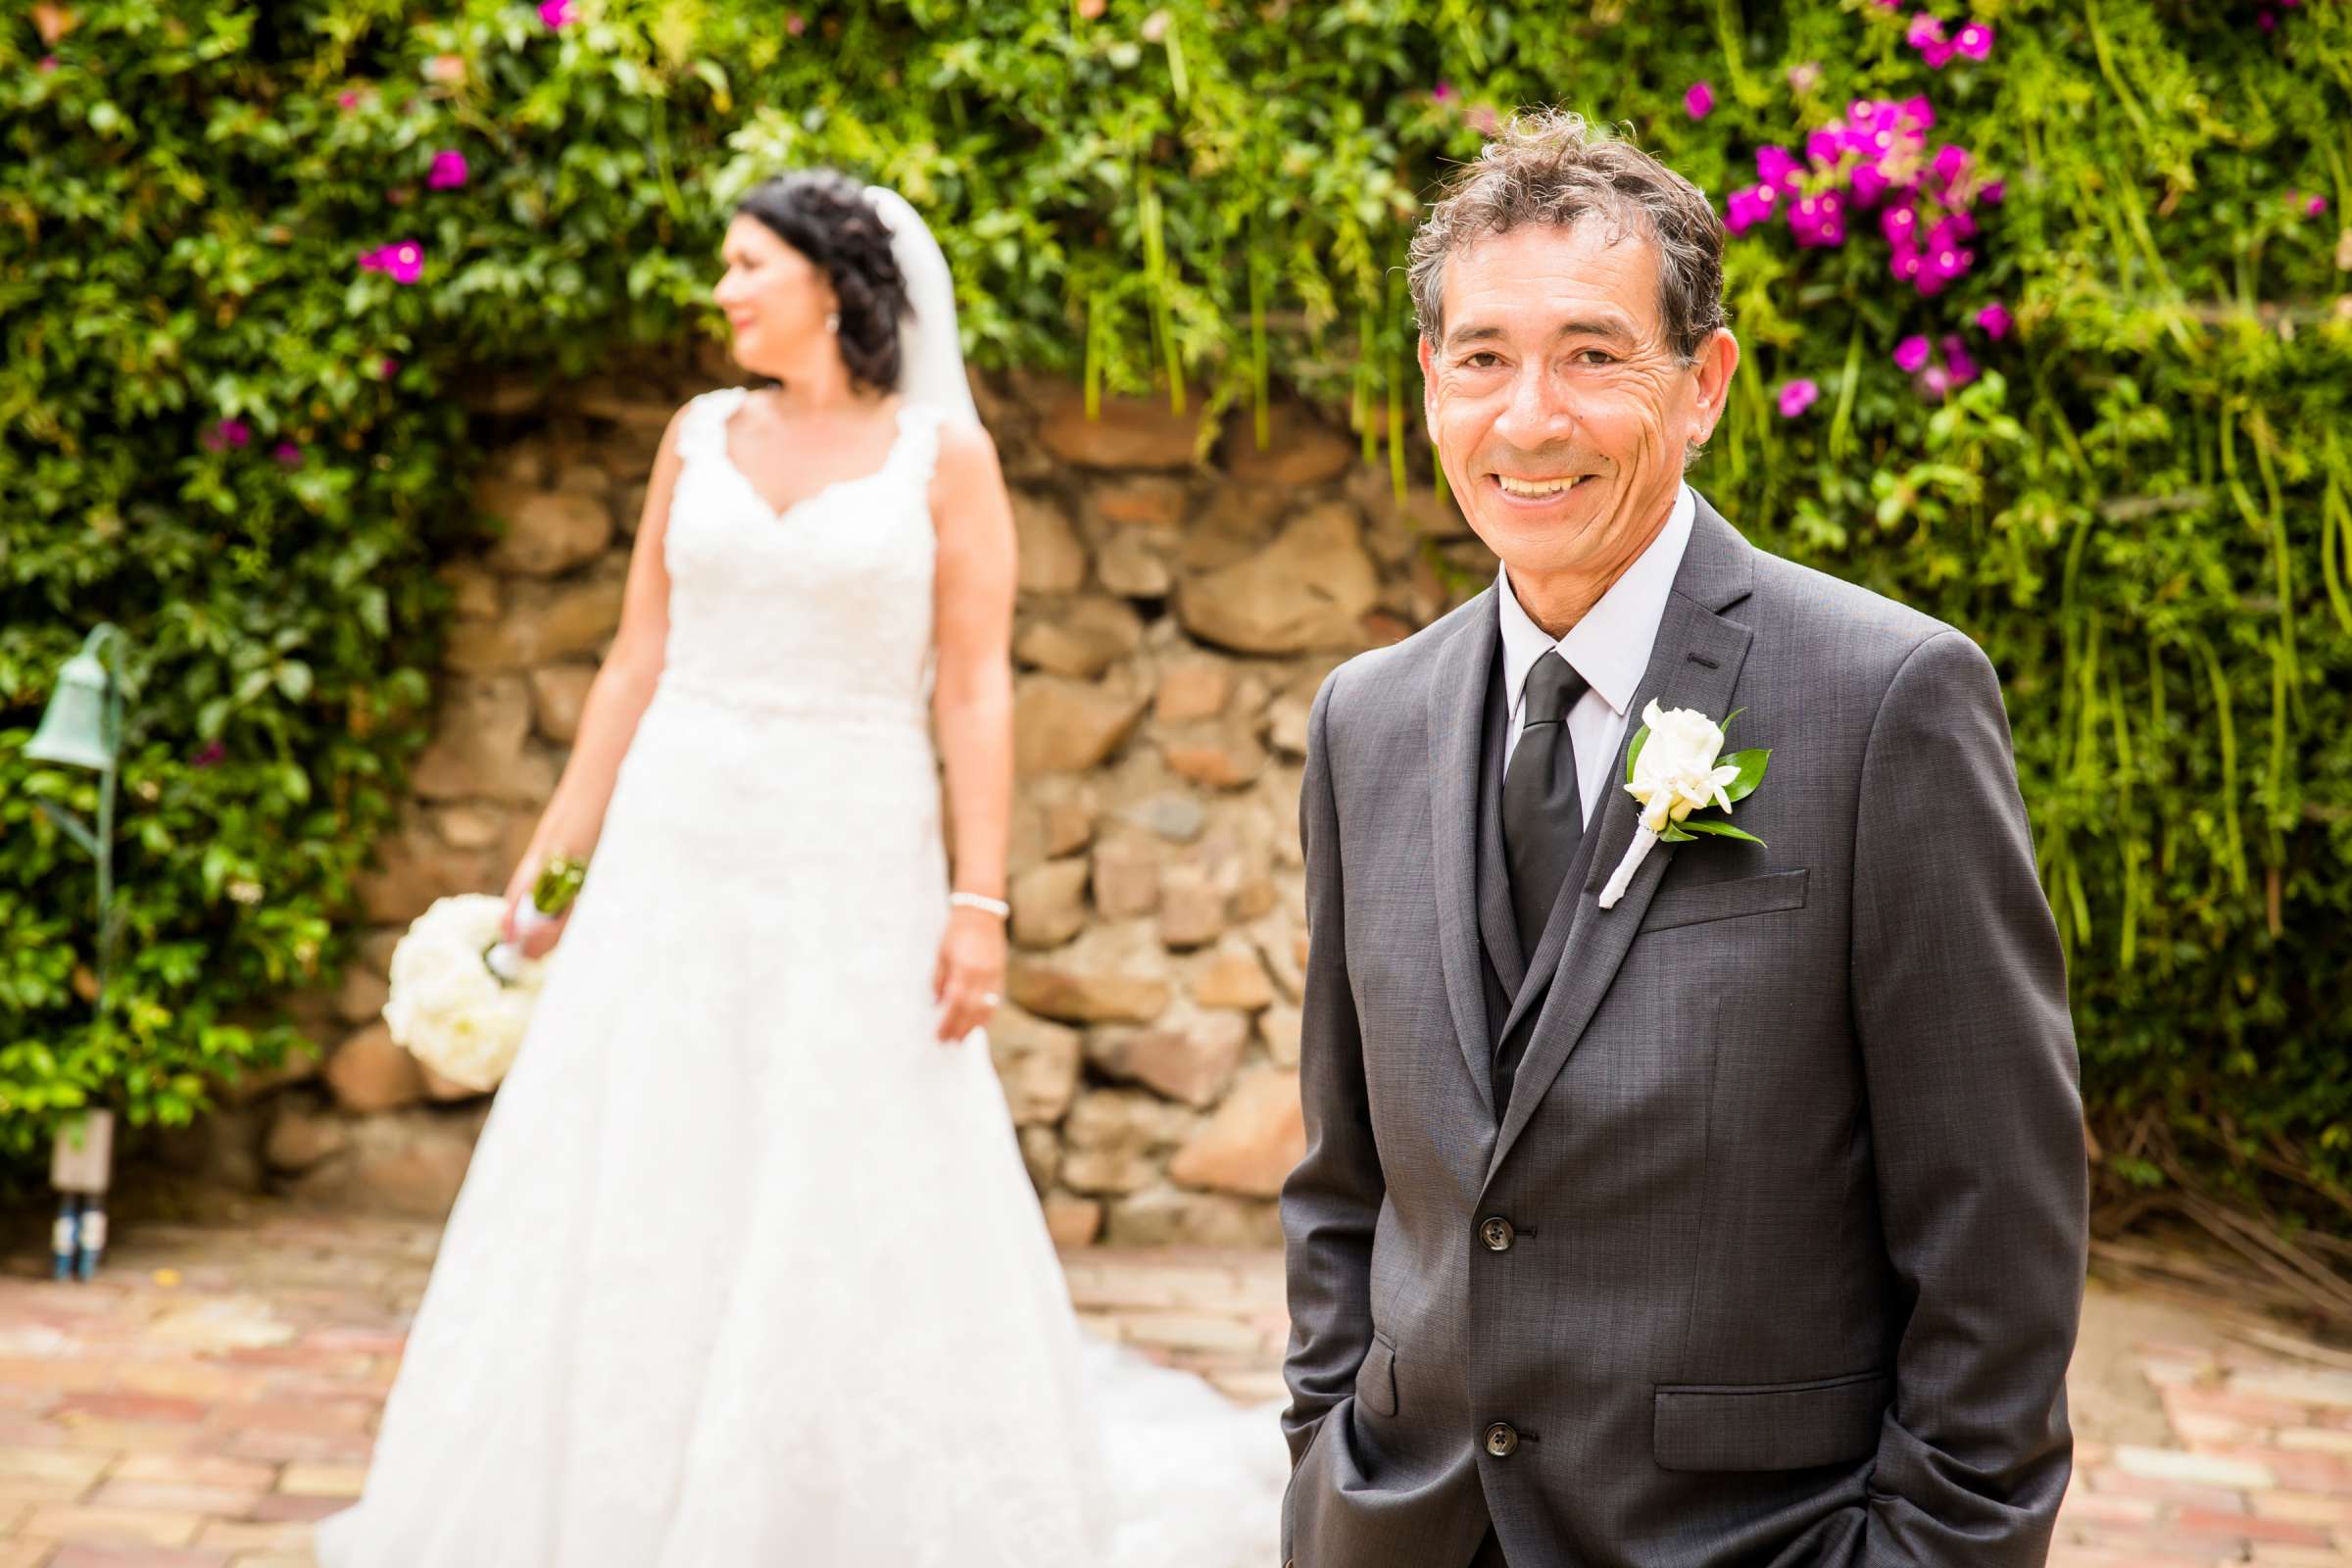 Rancho Buena Vista Adobe Wedding, Ellinor and Frank Wedding Photo #17 by True Photography